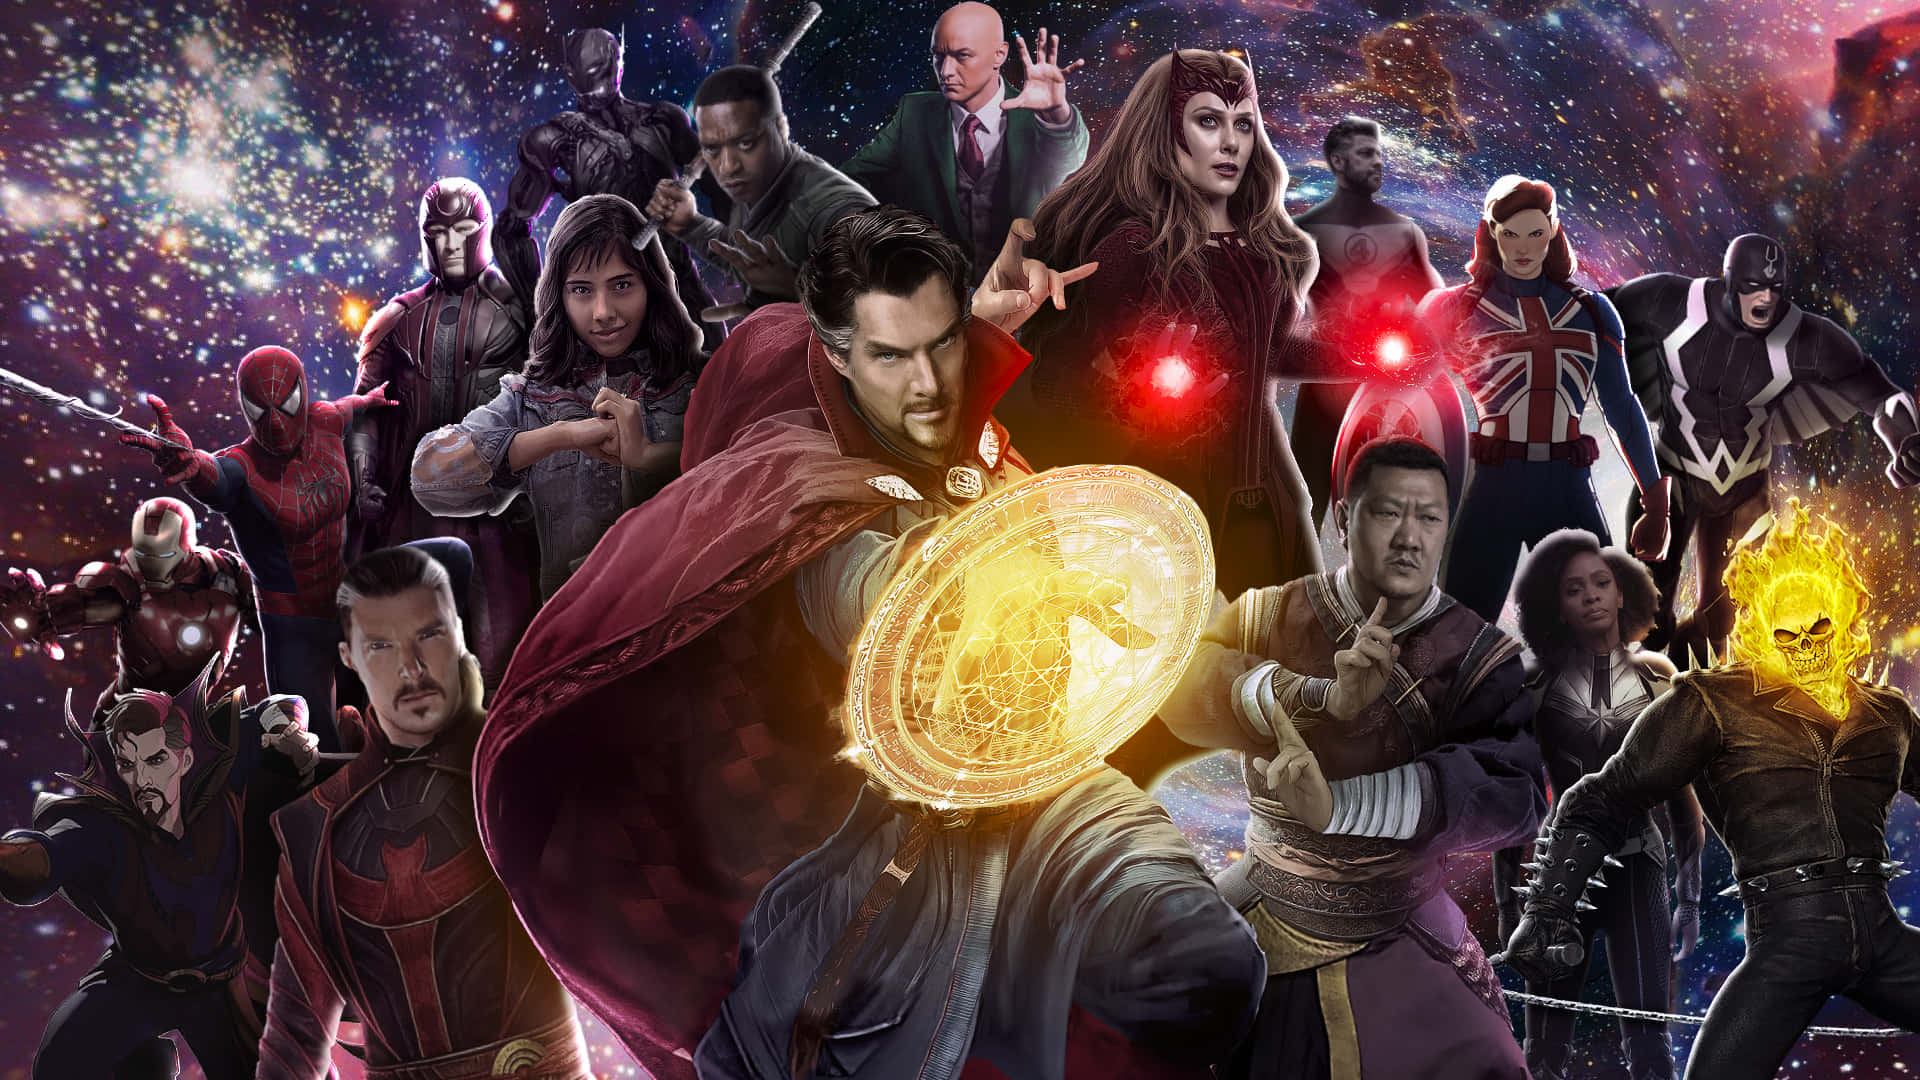 Doctor Strange begiver sig ud på en spændende rejse af opdagelse. Wallpaper